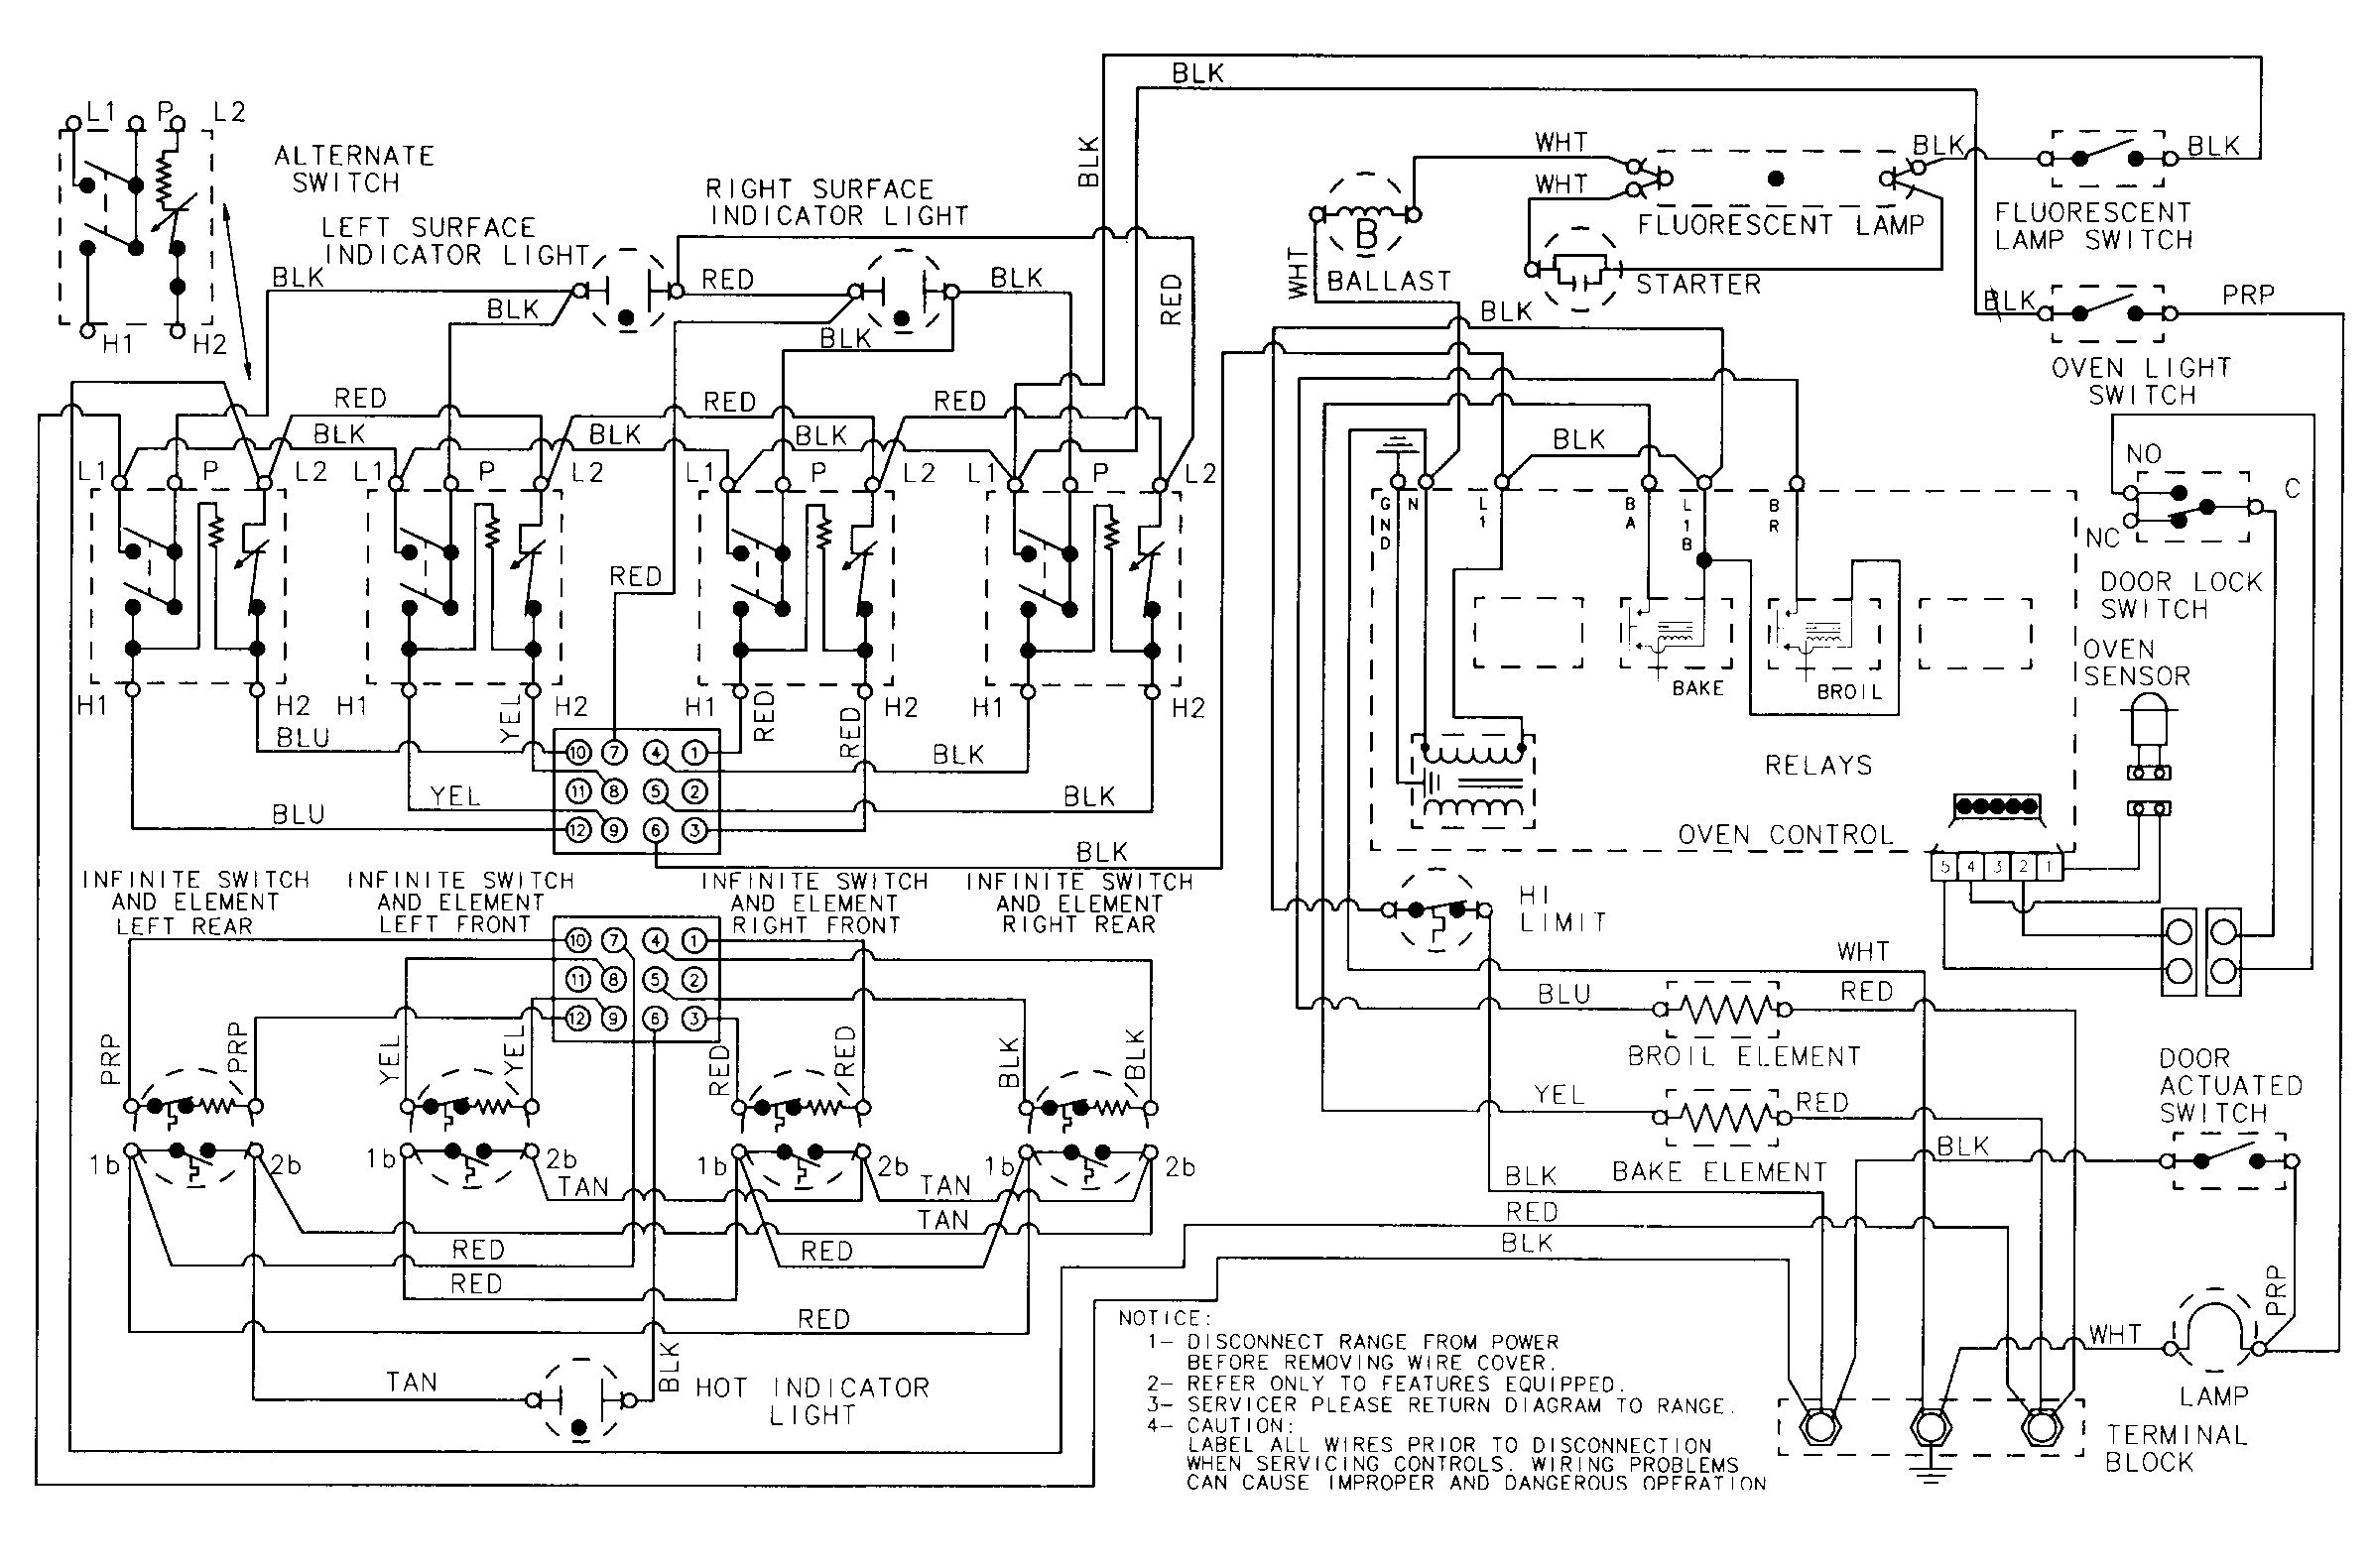 Bosche Dishwasher Wiring Schematic Bosch Dishwasher Wiring Instructions Wiring Diagram and Schematic Of Bosche Dishwasher Wiring Schematic